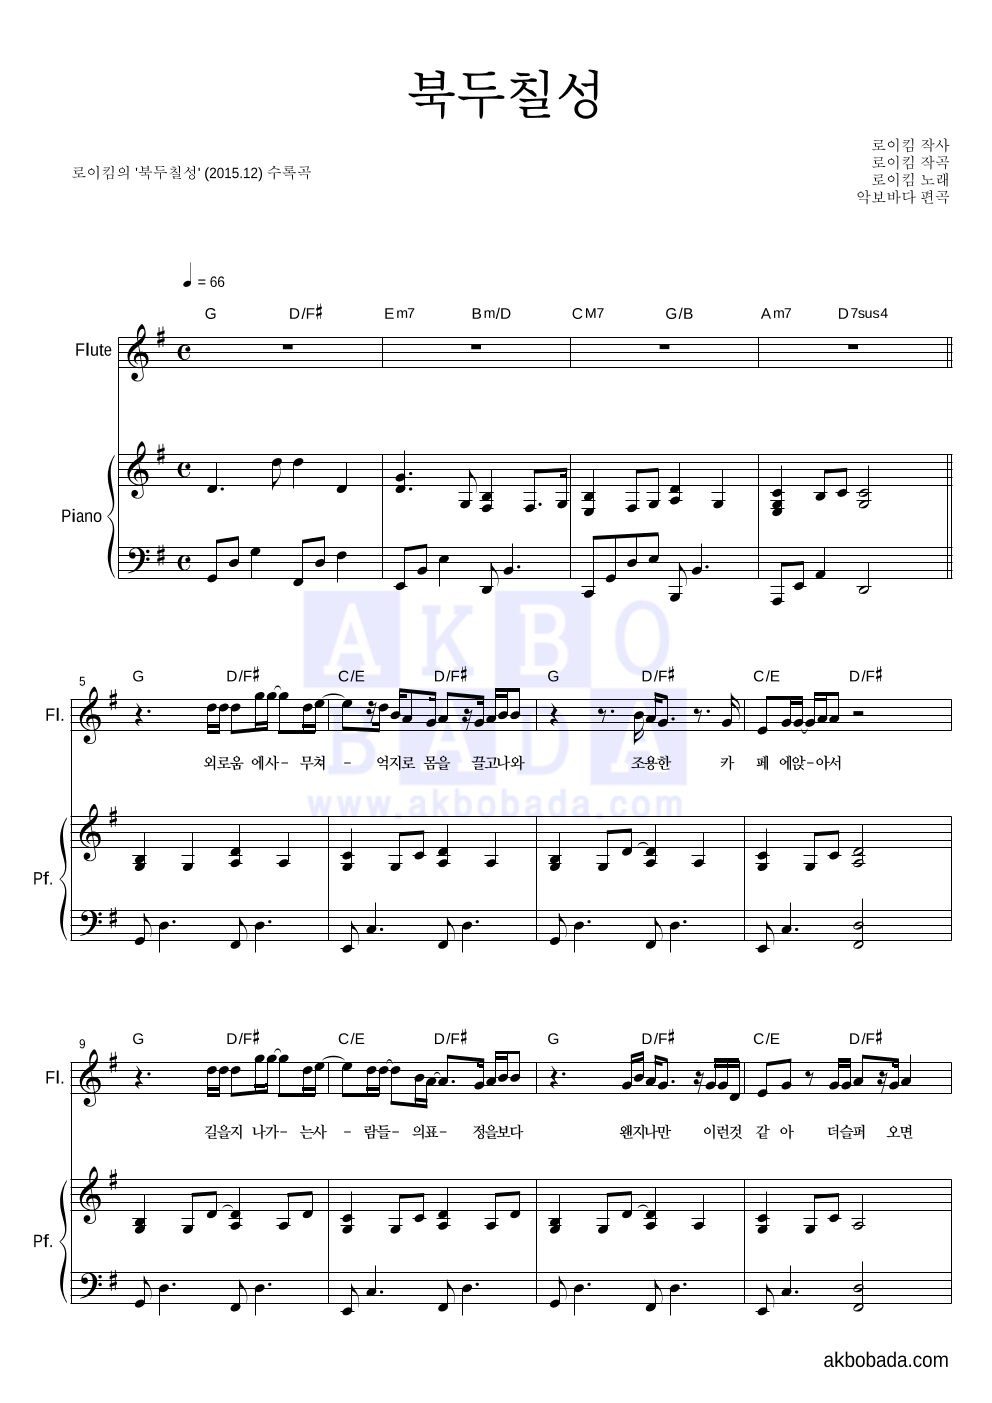 로이킴 - 북두칠성 플룻&피아노 악보 